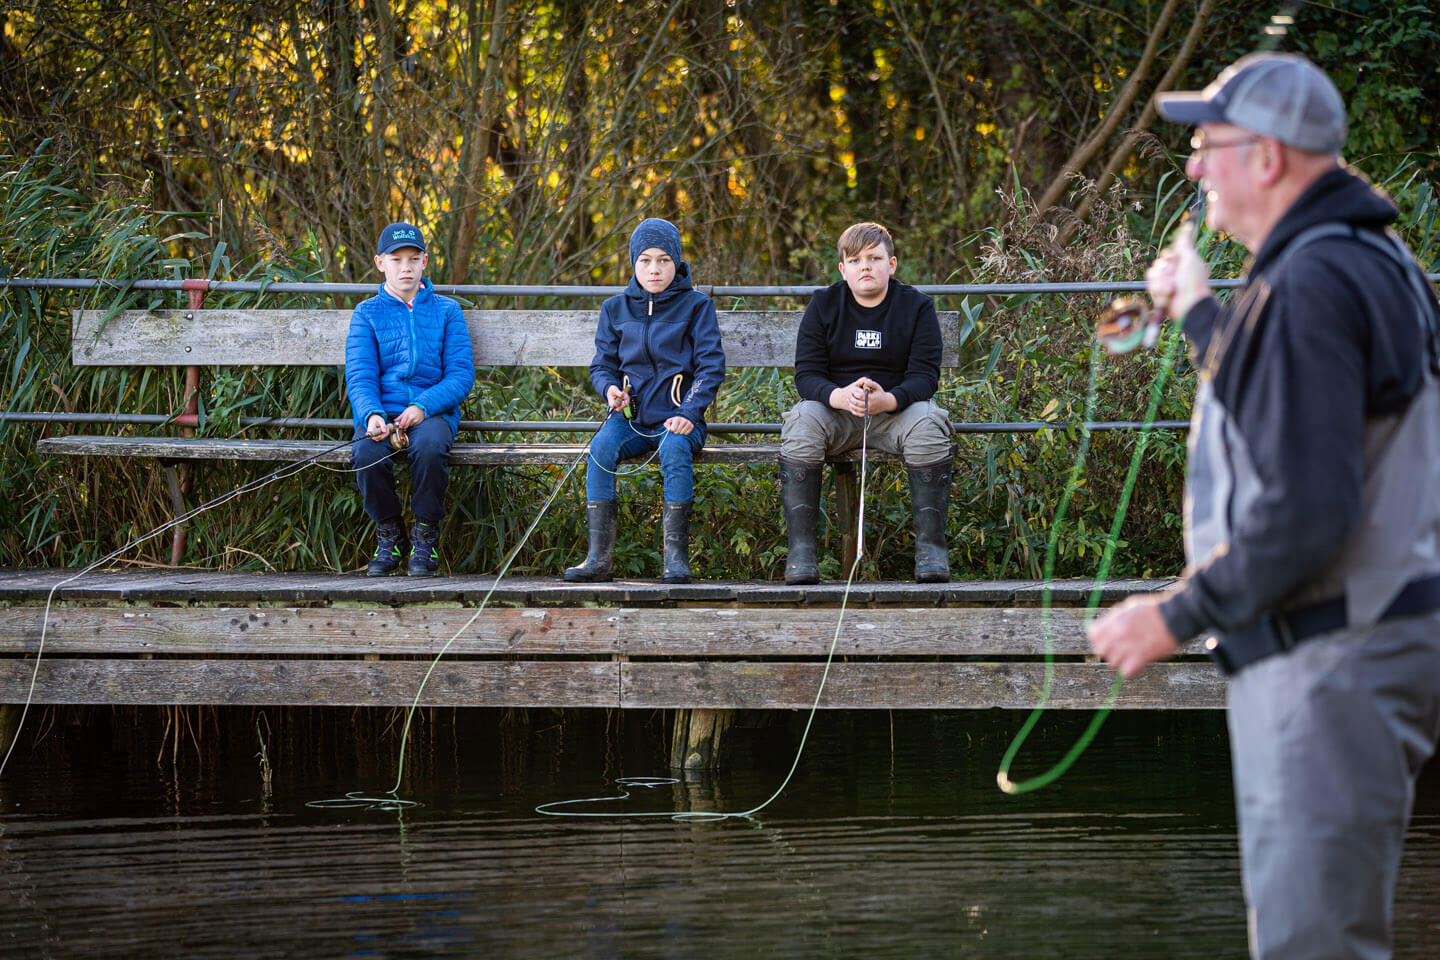 Unternehmensfotografie Outdoor: Lehrer Knuthsen erklärt seinen Schülern das Werfen mit der Fliegenrute